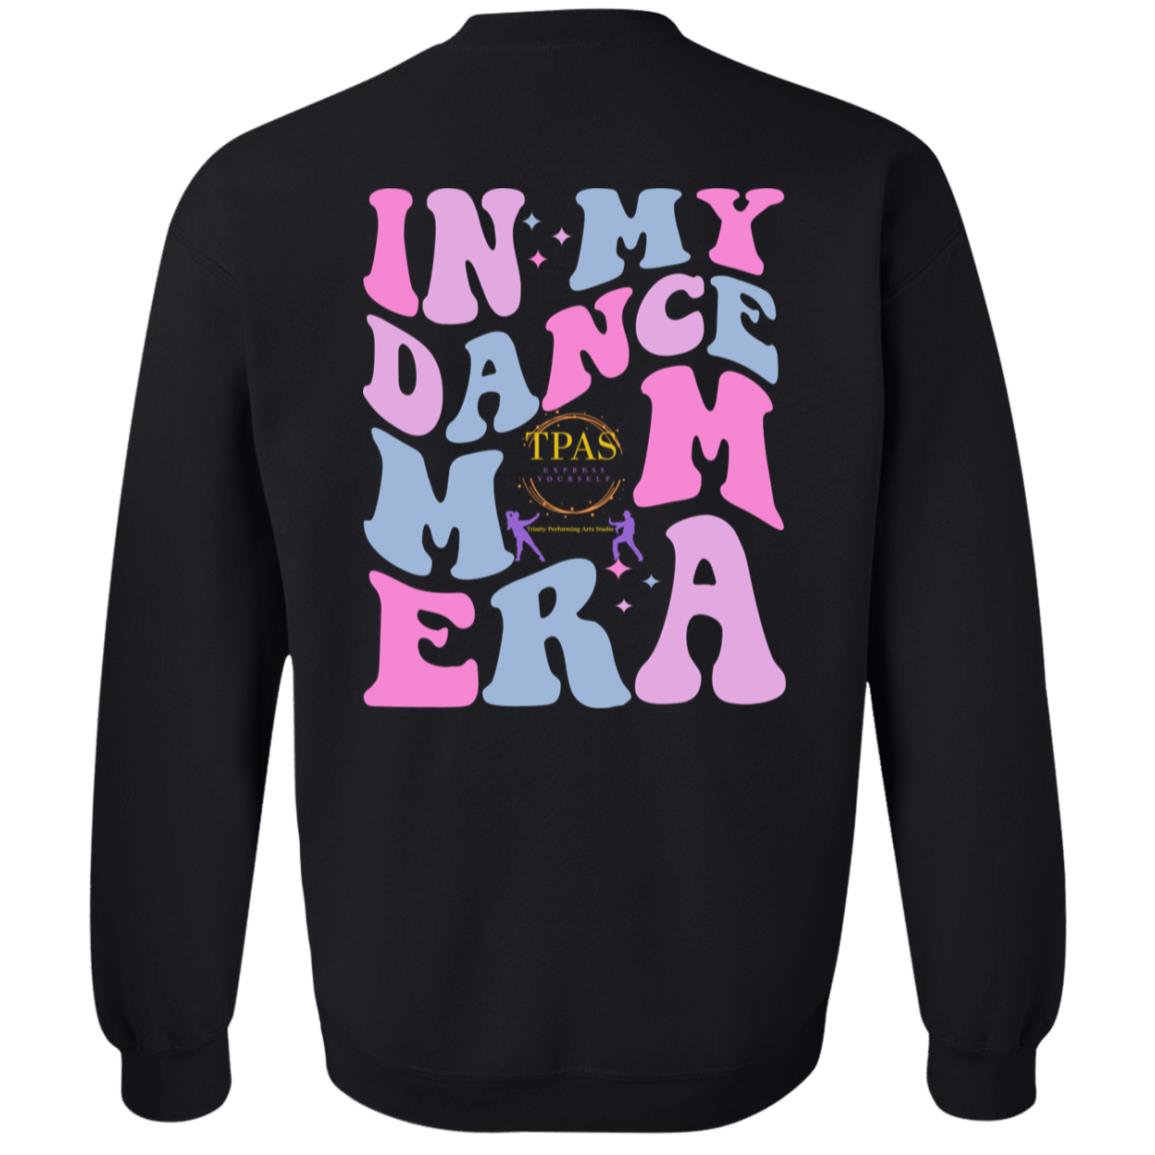 TPAS In My Dance Mom Era Crewneck Pullover Sweatshirt